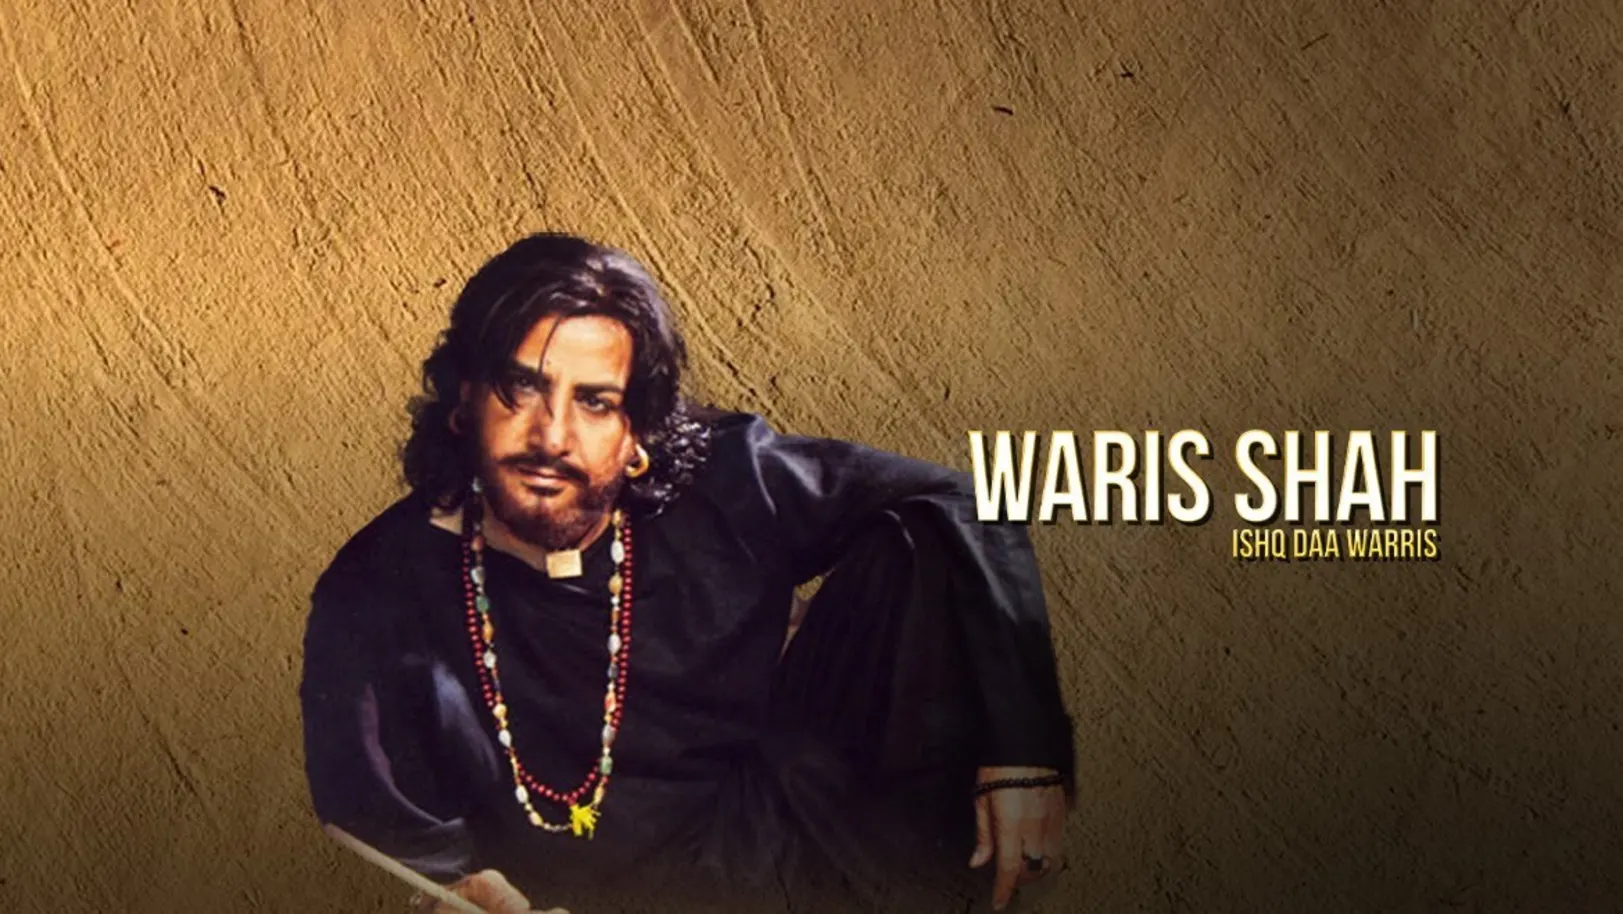 Waris Shah: Ishq Daa Waaris Movie